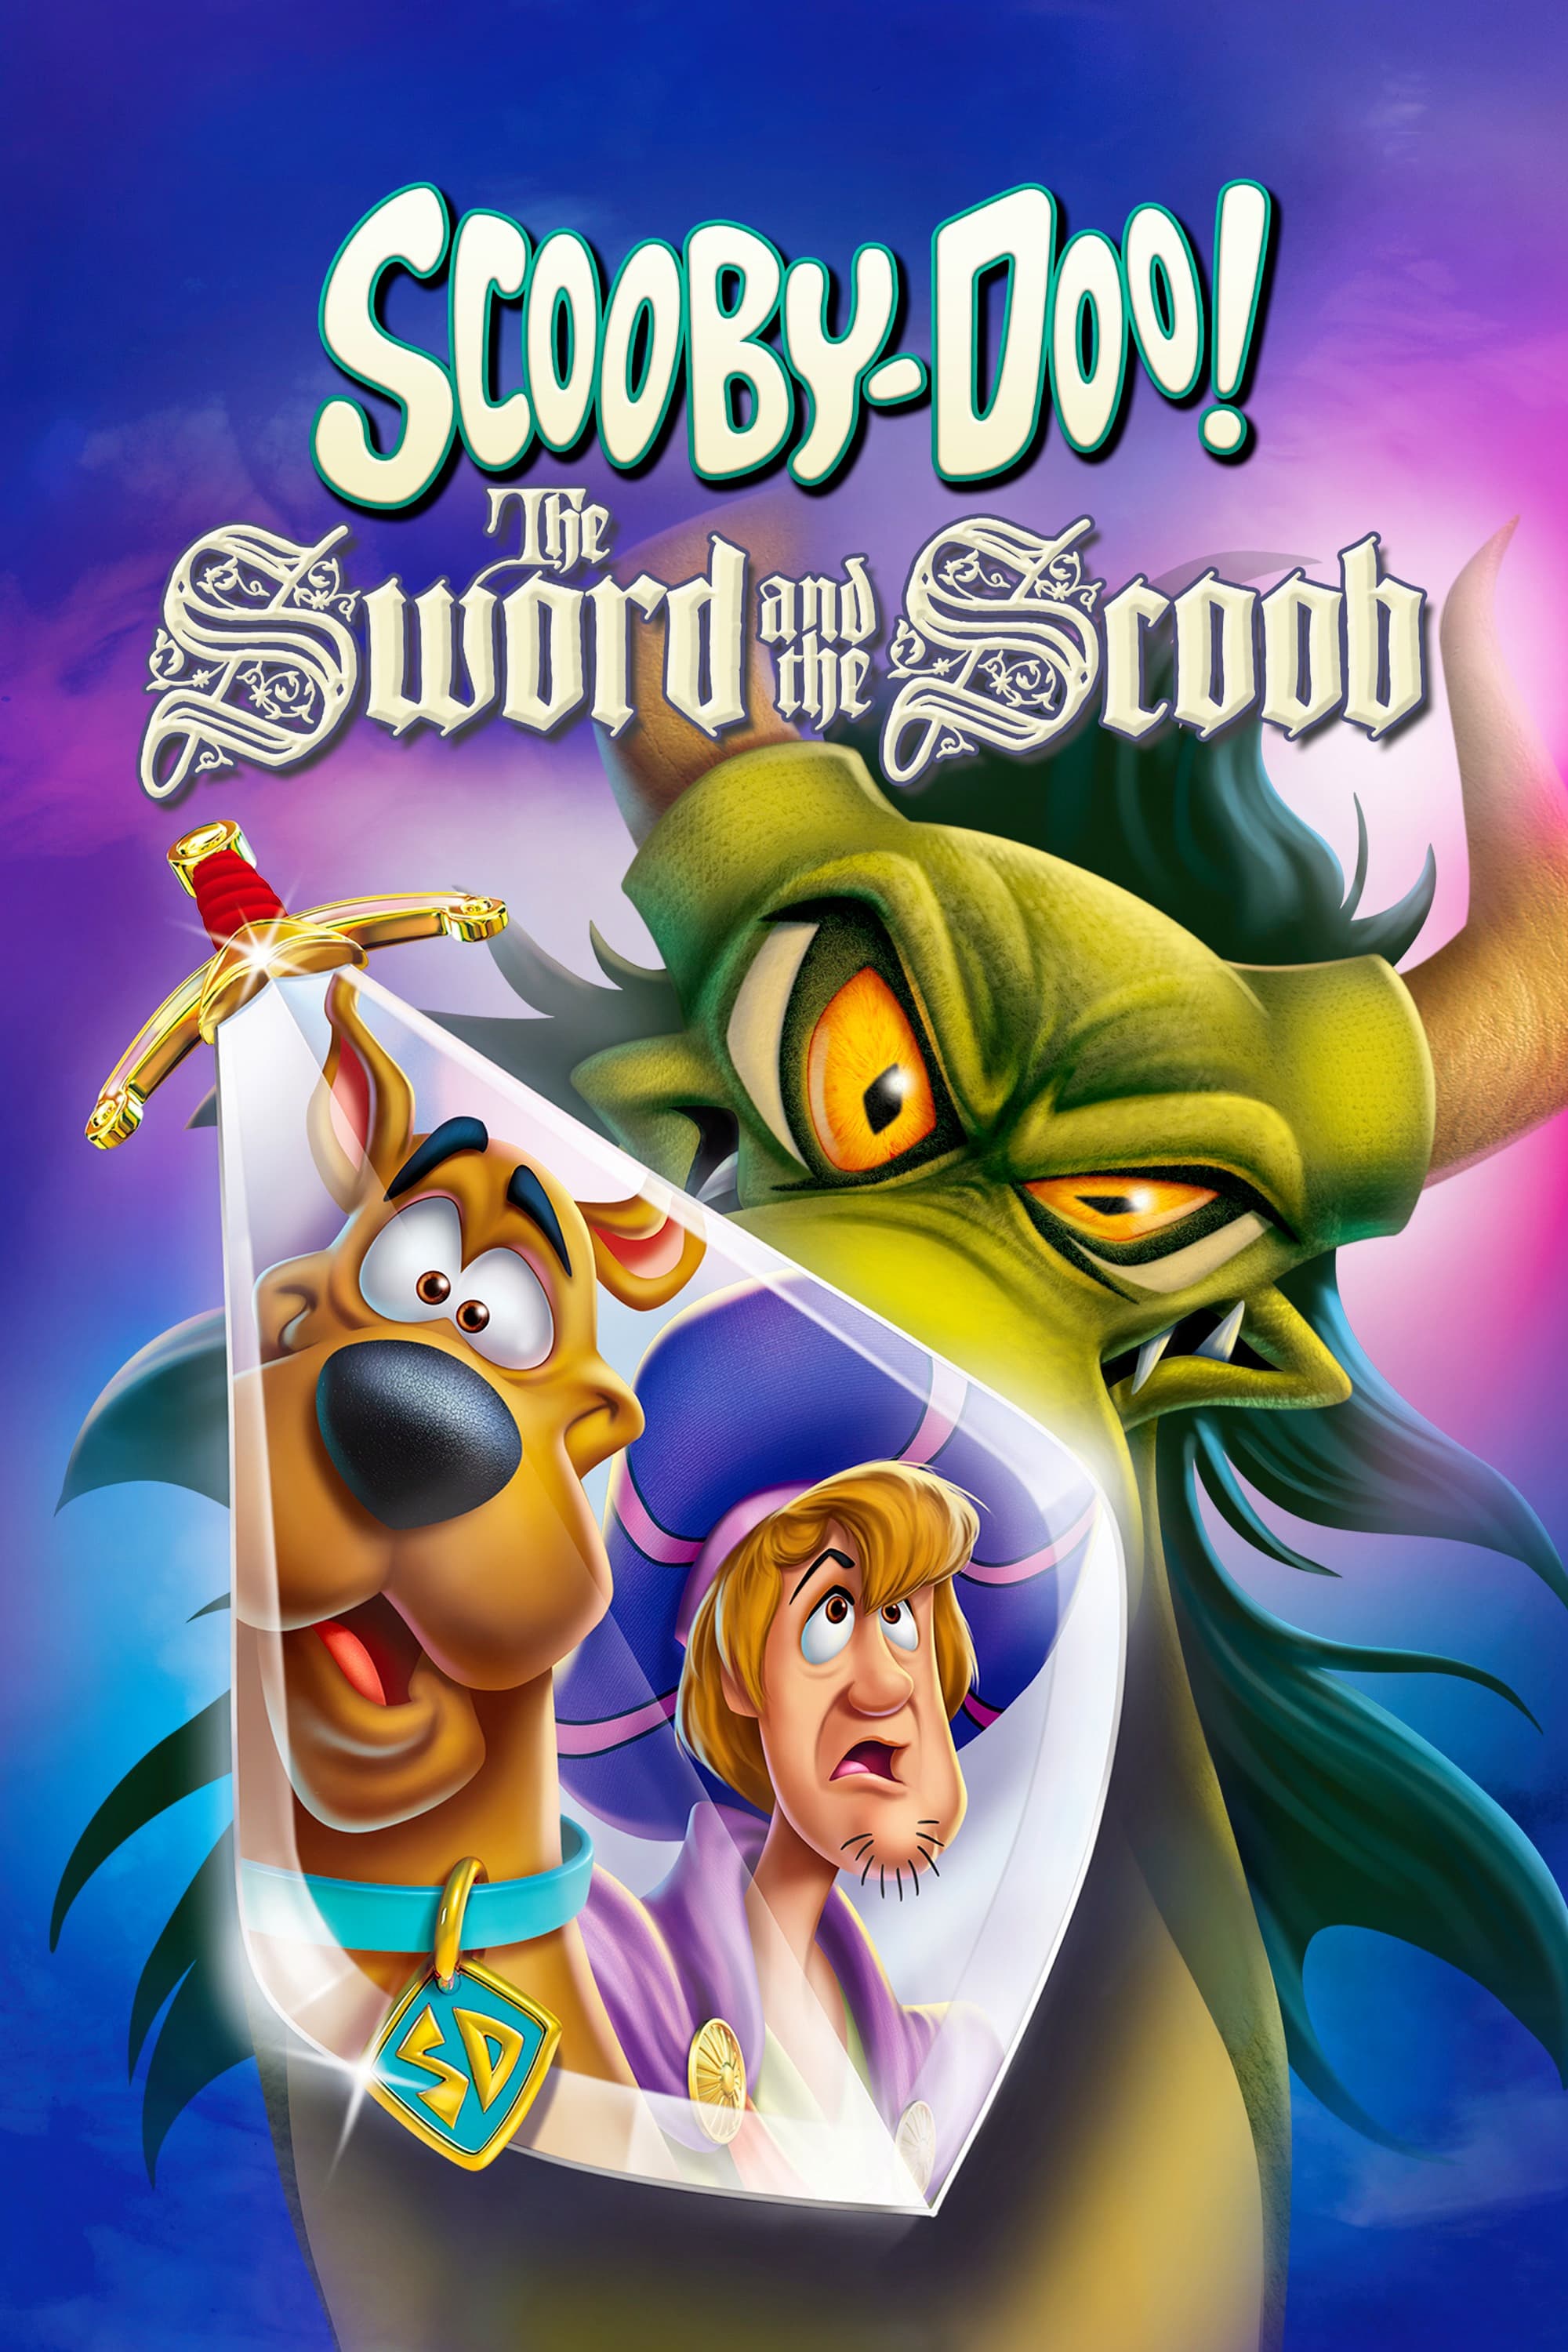 ¡Scooby-Doo! La Leyenda de Scoobydur (2021)